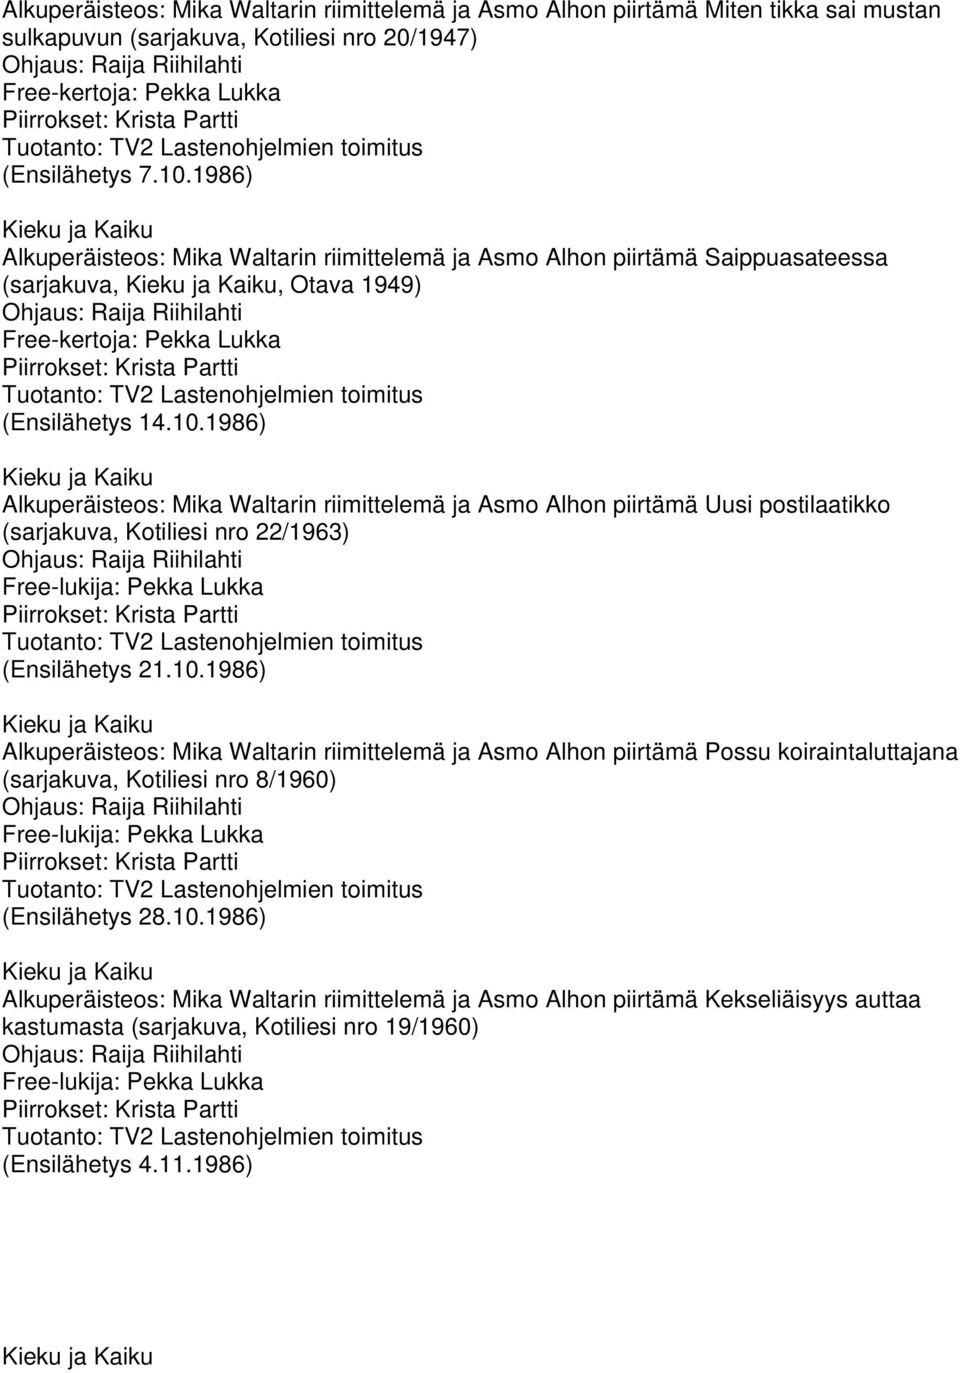 1986) Alkuperäisteos: Mika Waltarin riimittelemä ja Asmo Alhon piirtämä Uusi postilaatikko (sarjakuva, Kotiliesi nro 22/1963) (Ensilähetys 21.10.